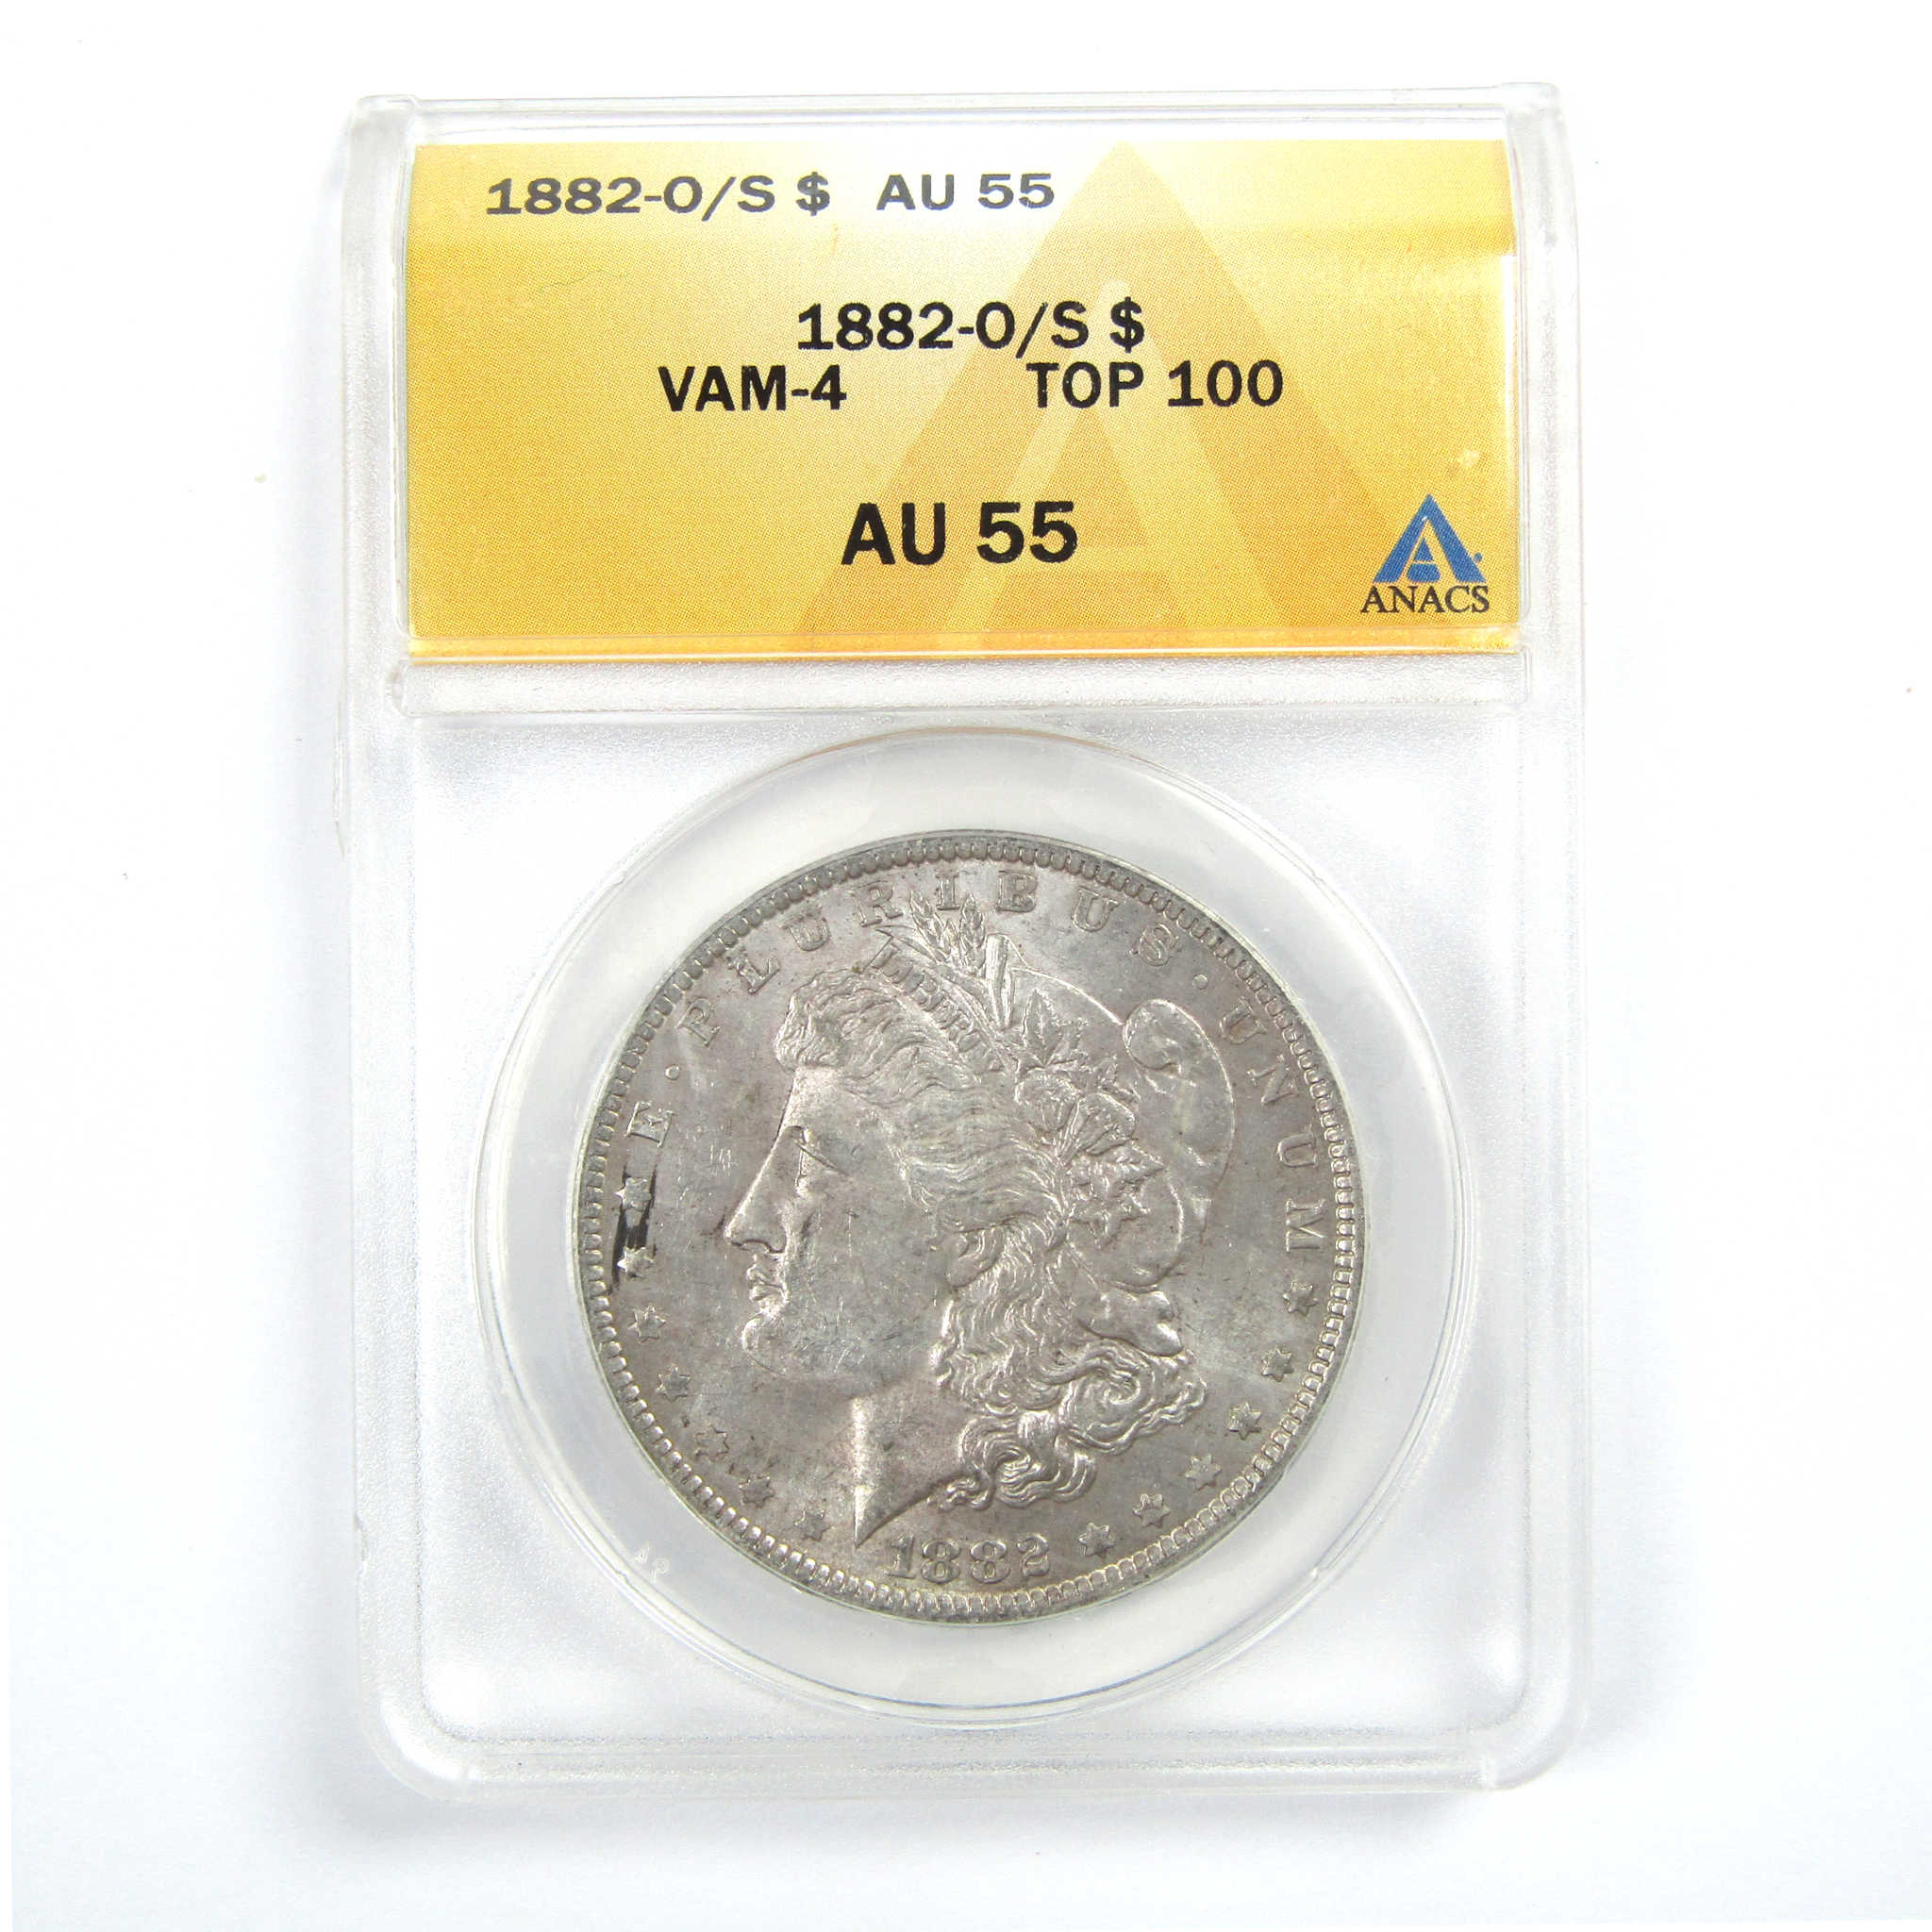 1882 O/S Morgan Dollar AU 55 ANACS Silver $1 Coin SKU:CPC6855 - Morgan coin - Morgan silver dollar - Morgan silver dollar for sale - Profile Coins &amp; Collectibles